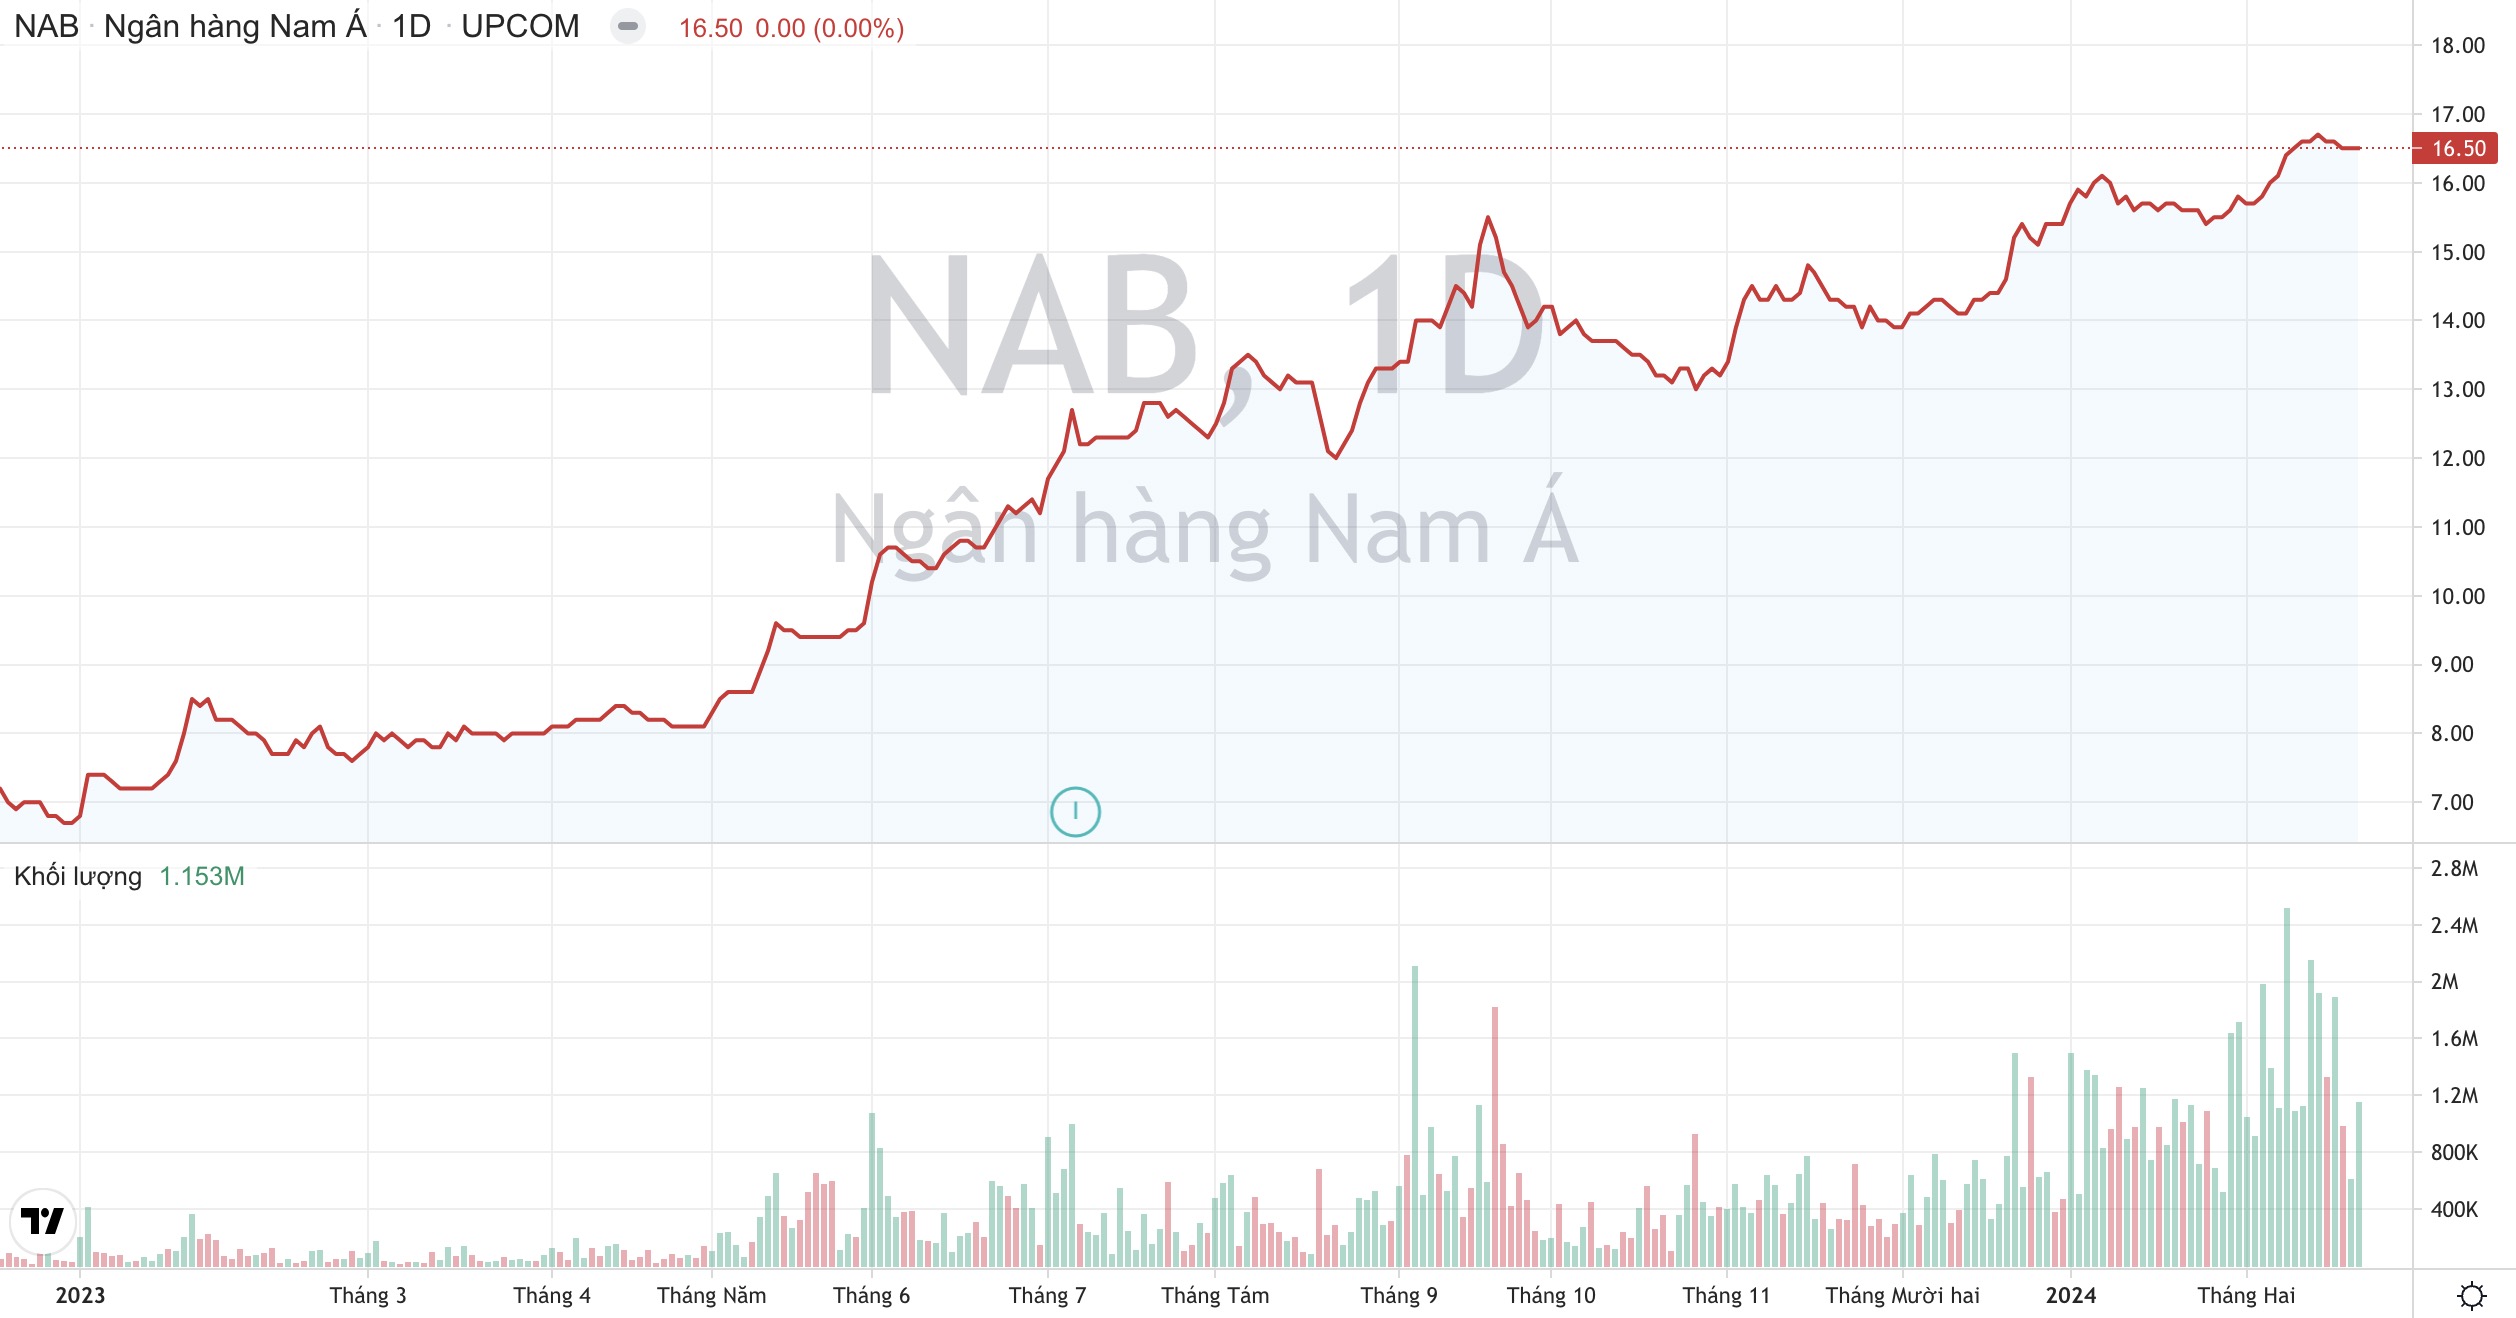 Chuẩn bị chào sàn HoSE, cổ phiếu NAB - Ngân hàng Nam Á neo tại vùng đỉnh lịch sử